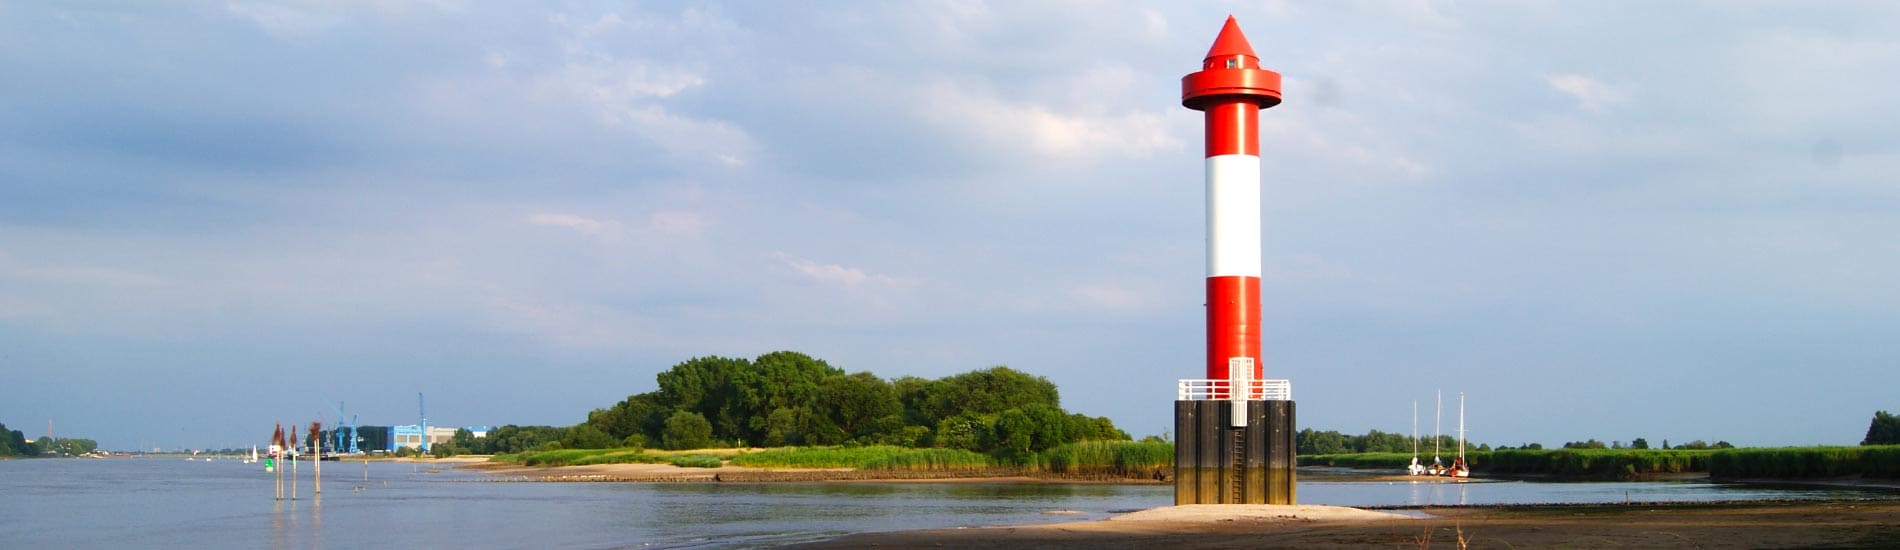 Leuchtturm in Wesermarsch